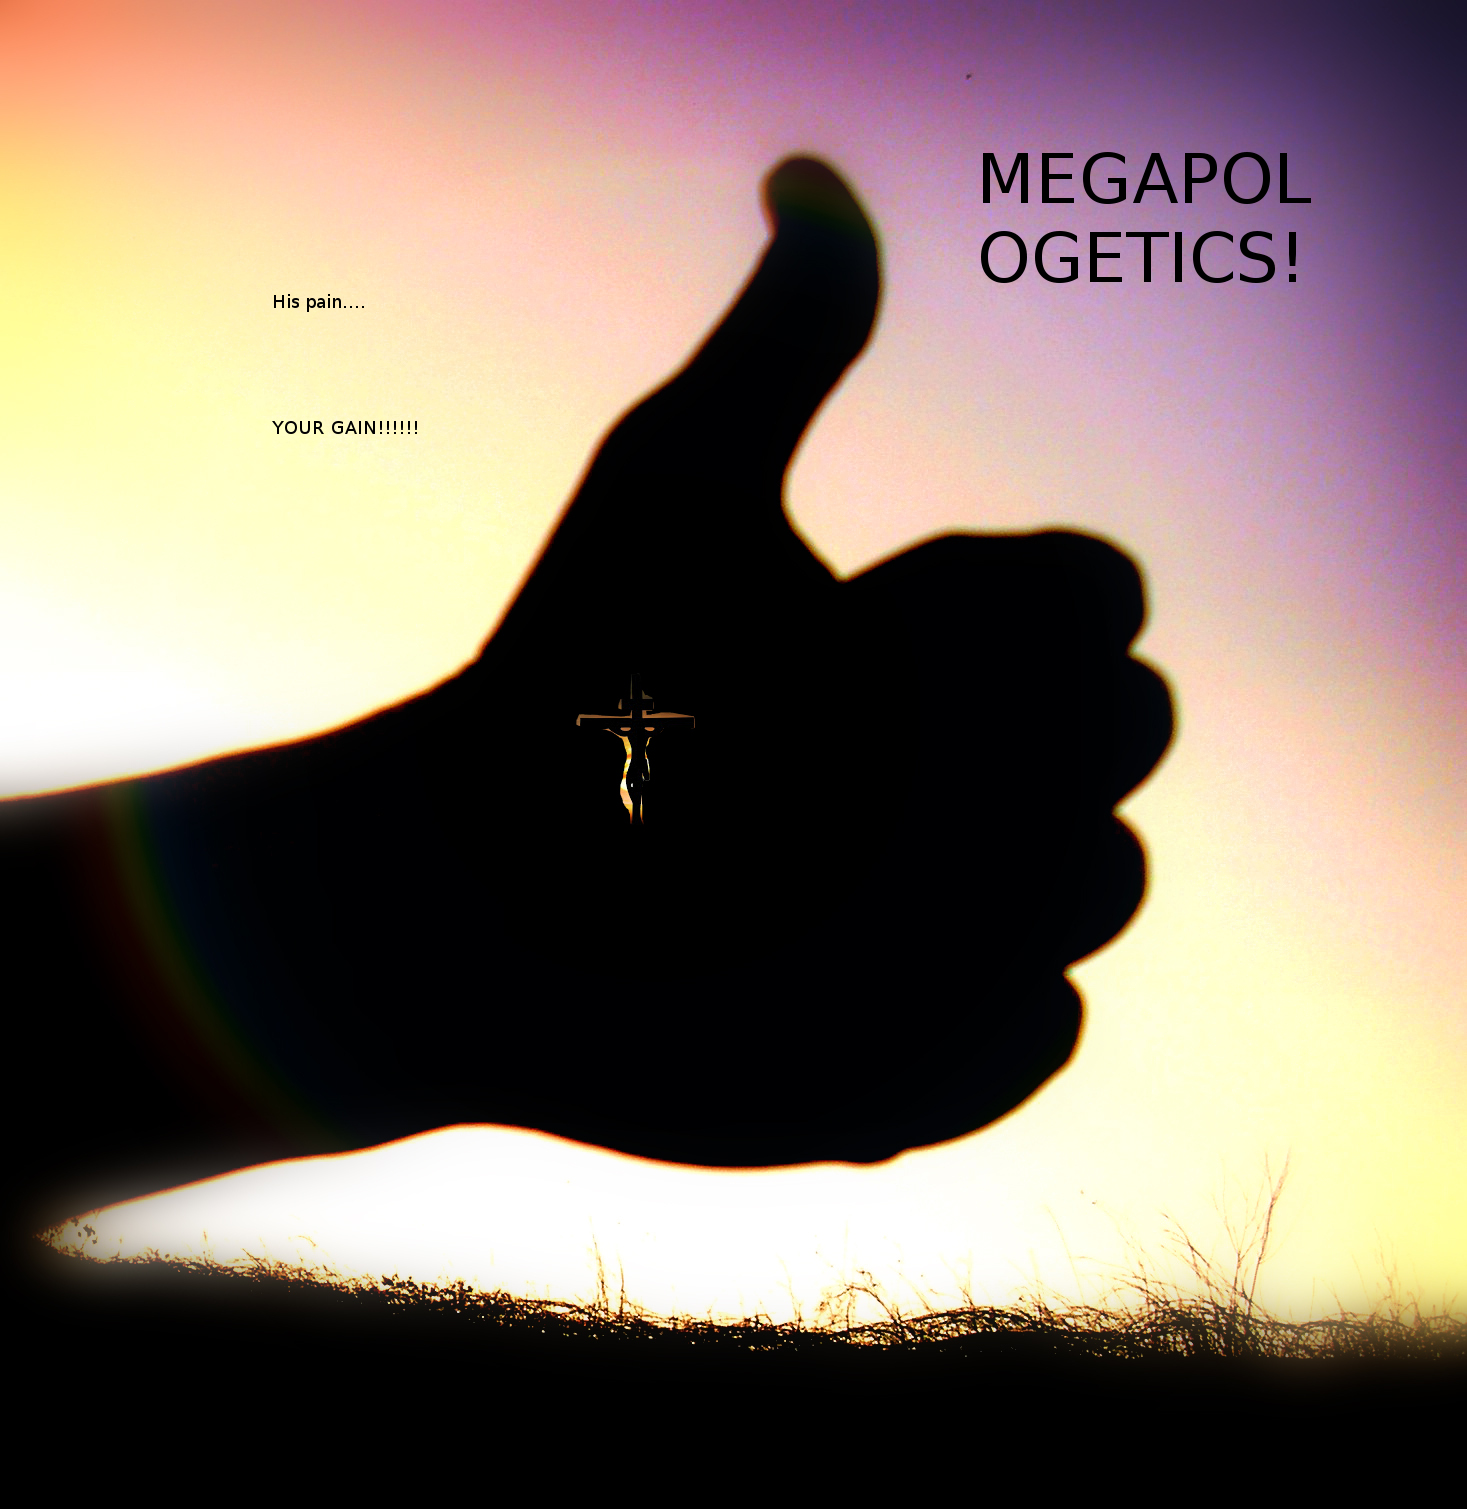 Megapologetics!